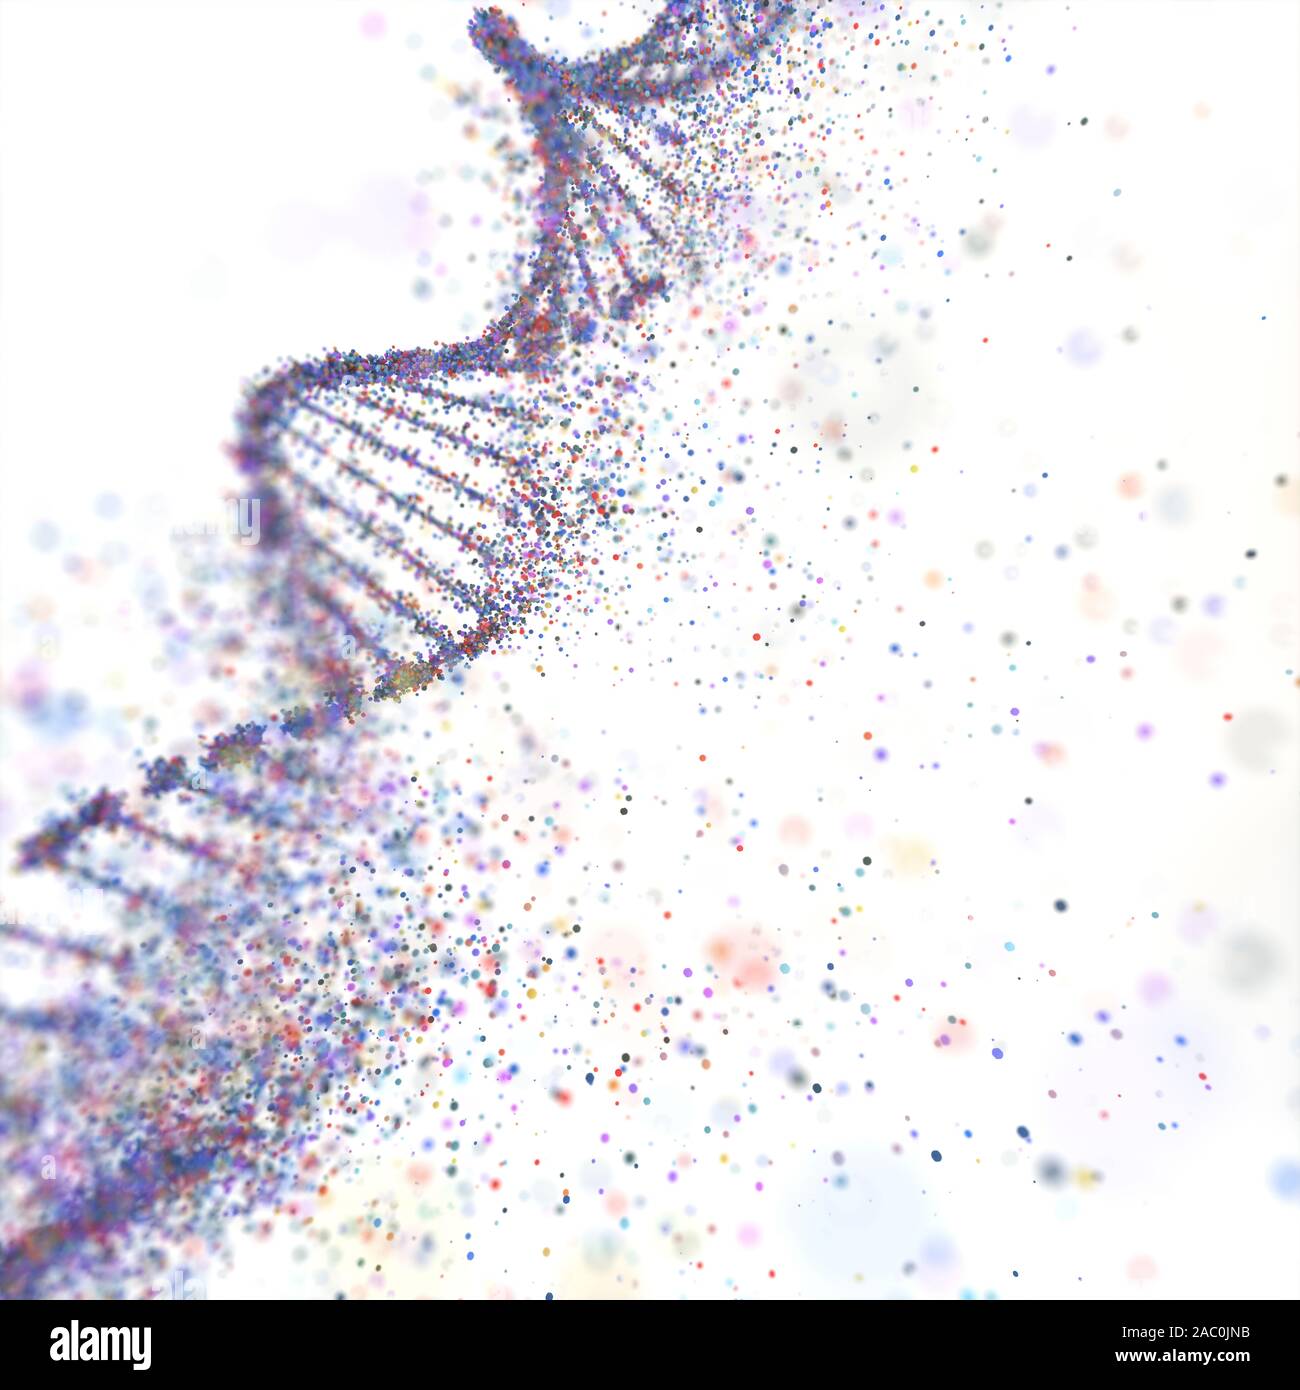 Anomalie génétique, l'illustration conceptuelle Banque D'Images